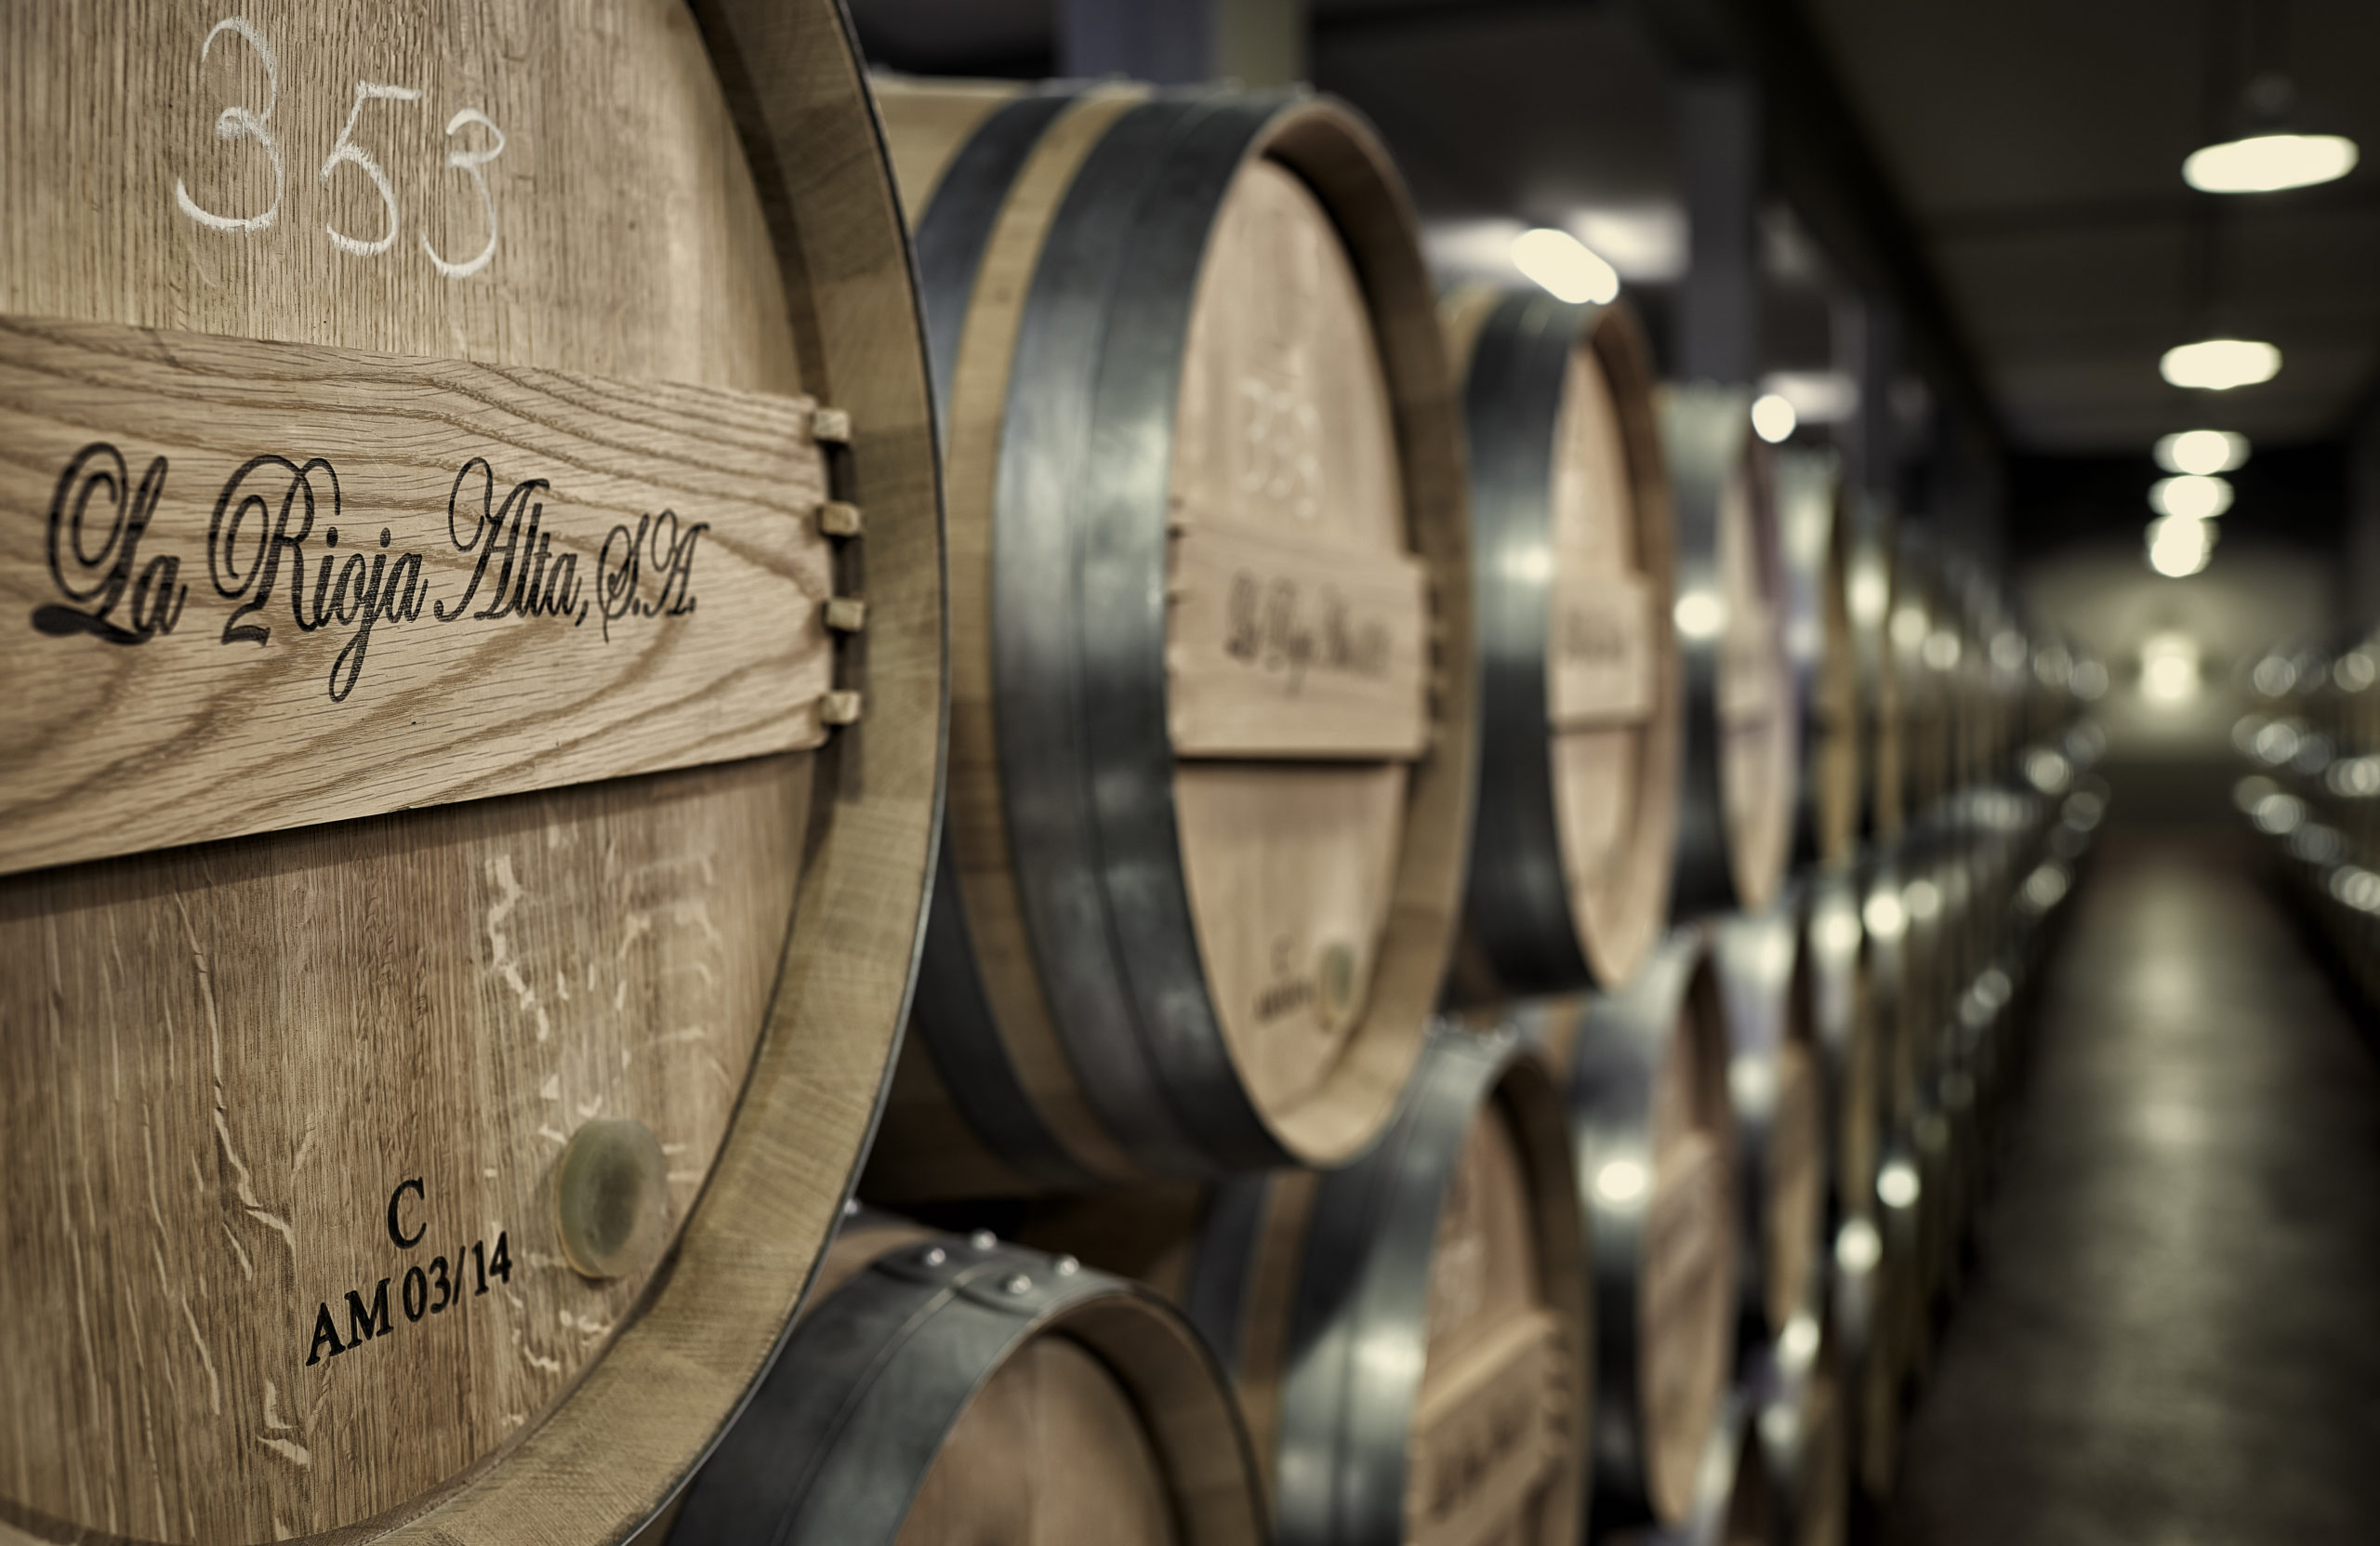 picture of La Rioja Alta, S.A. wine barrels